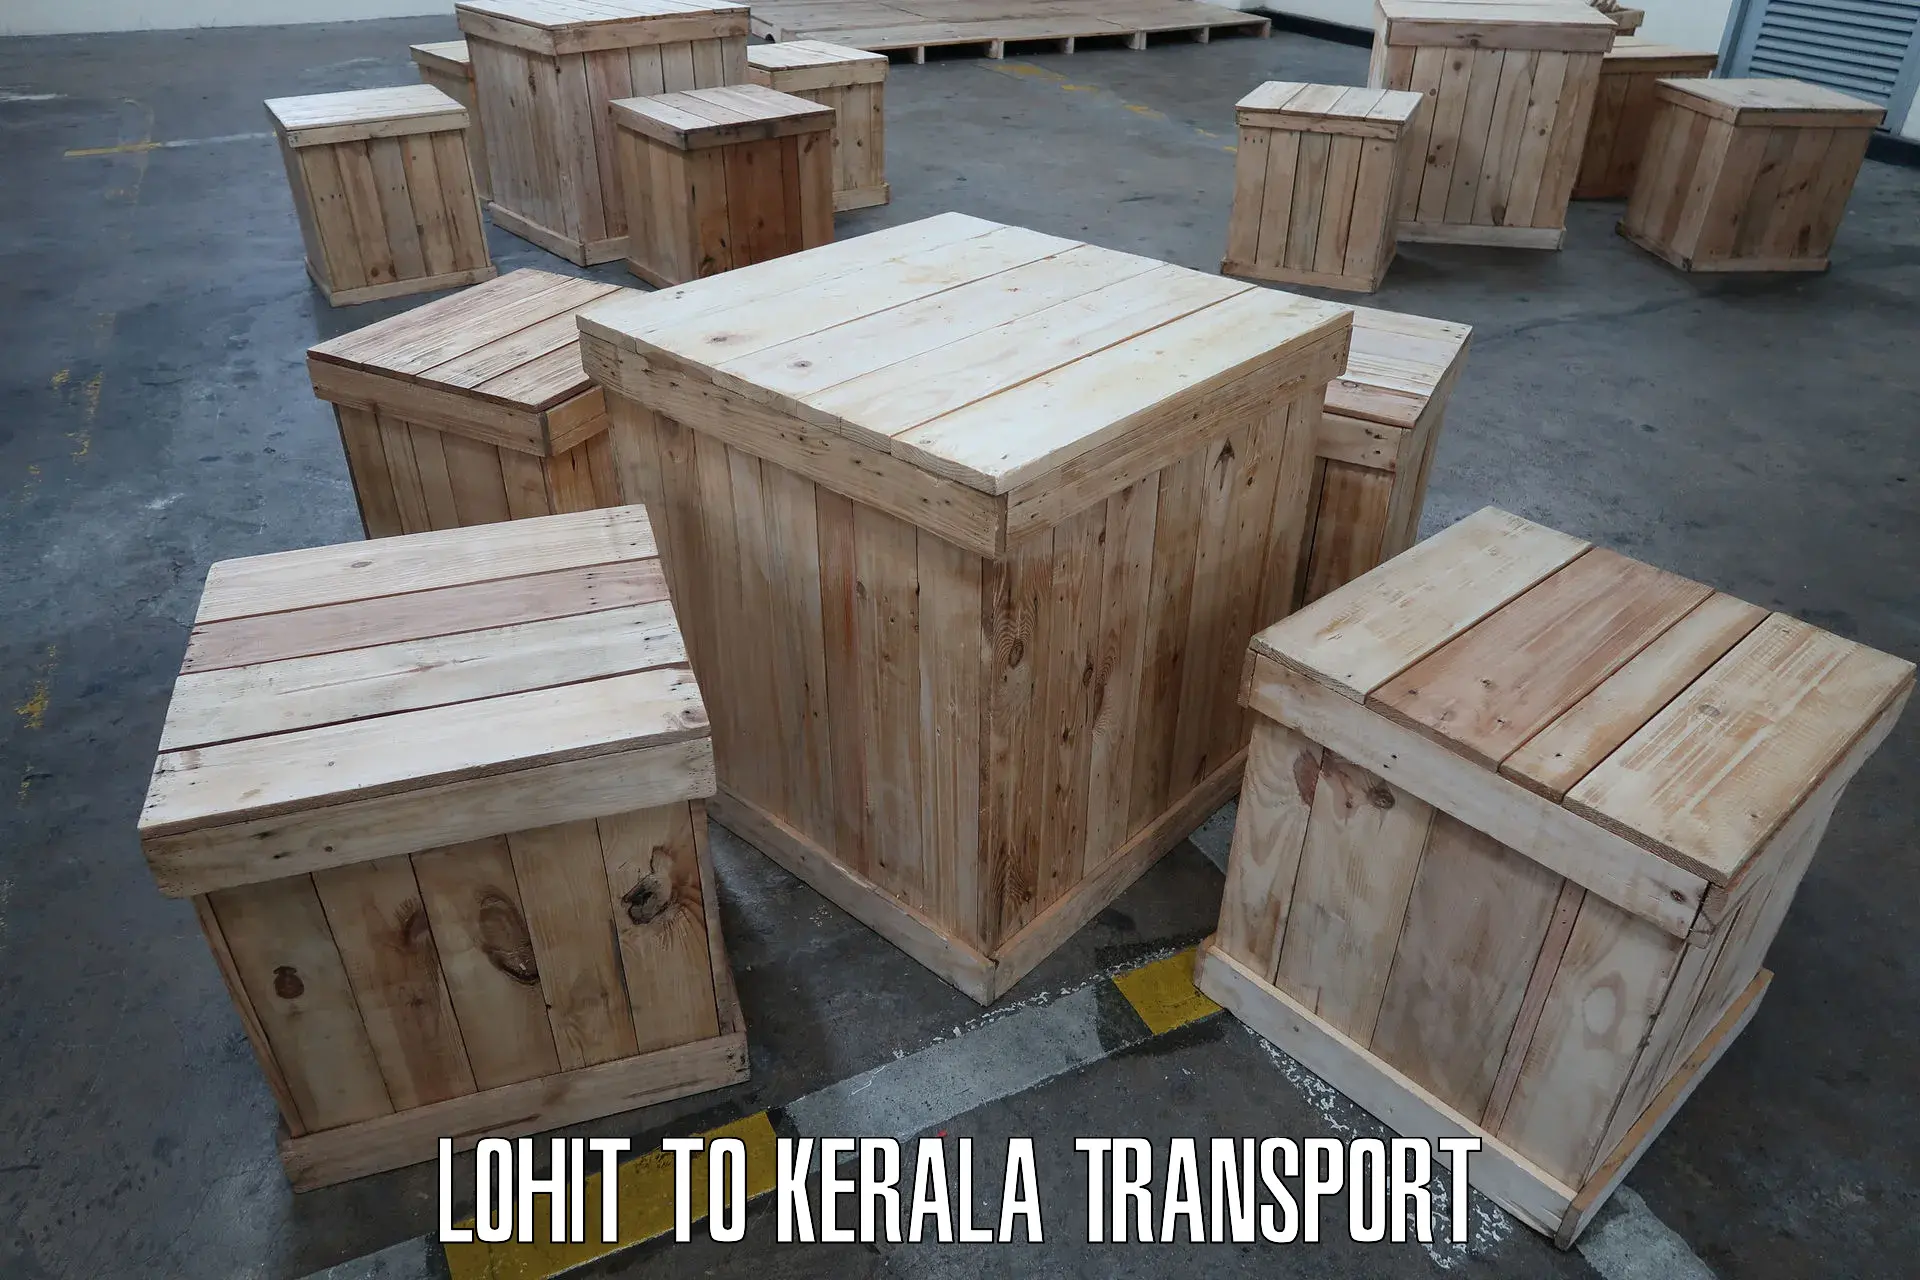 Online transport service Lohit to Panthalam